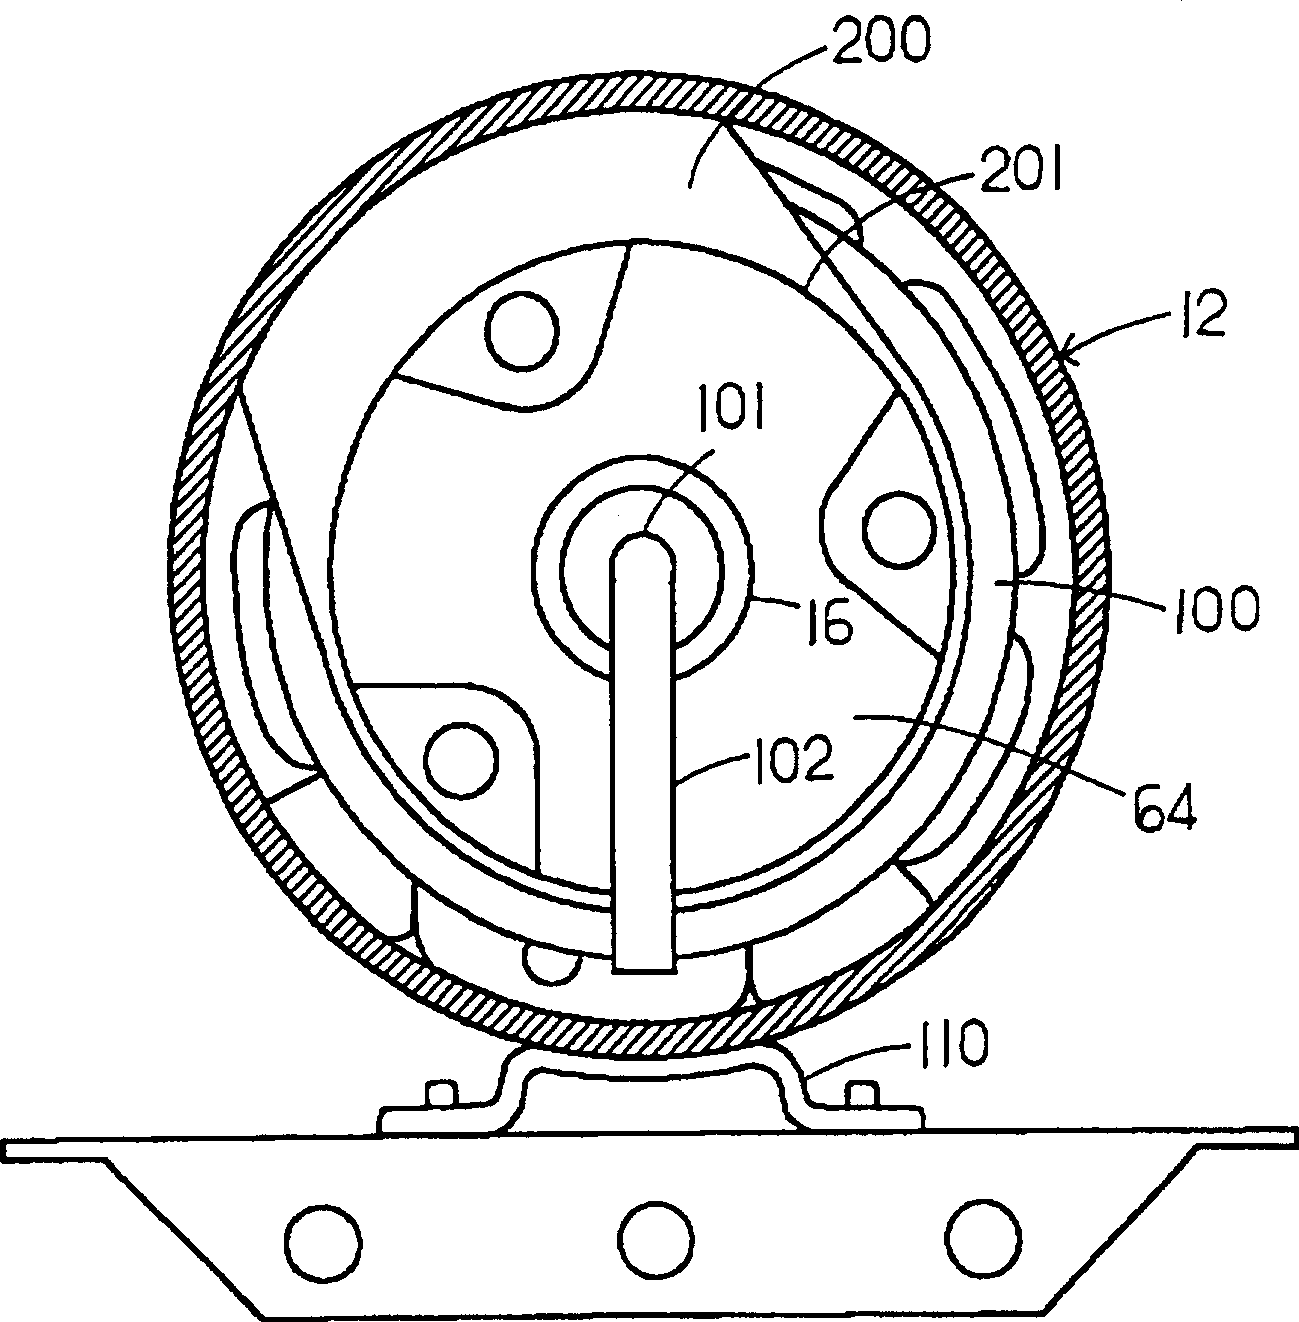 Horizontal rotary compressor